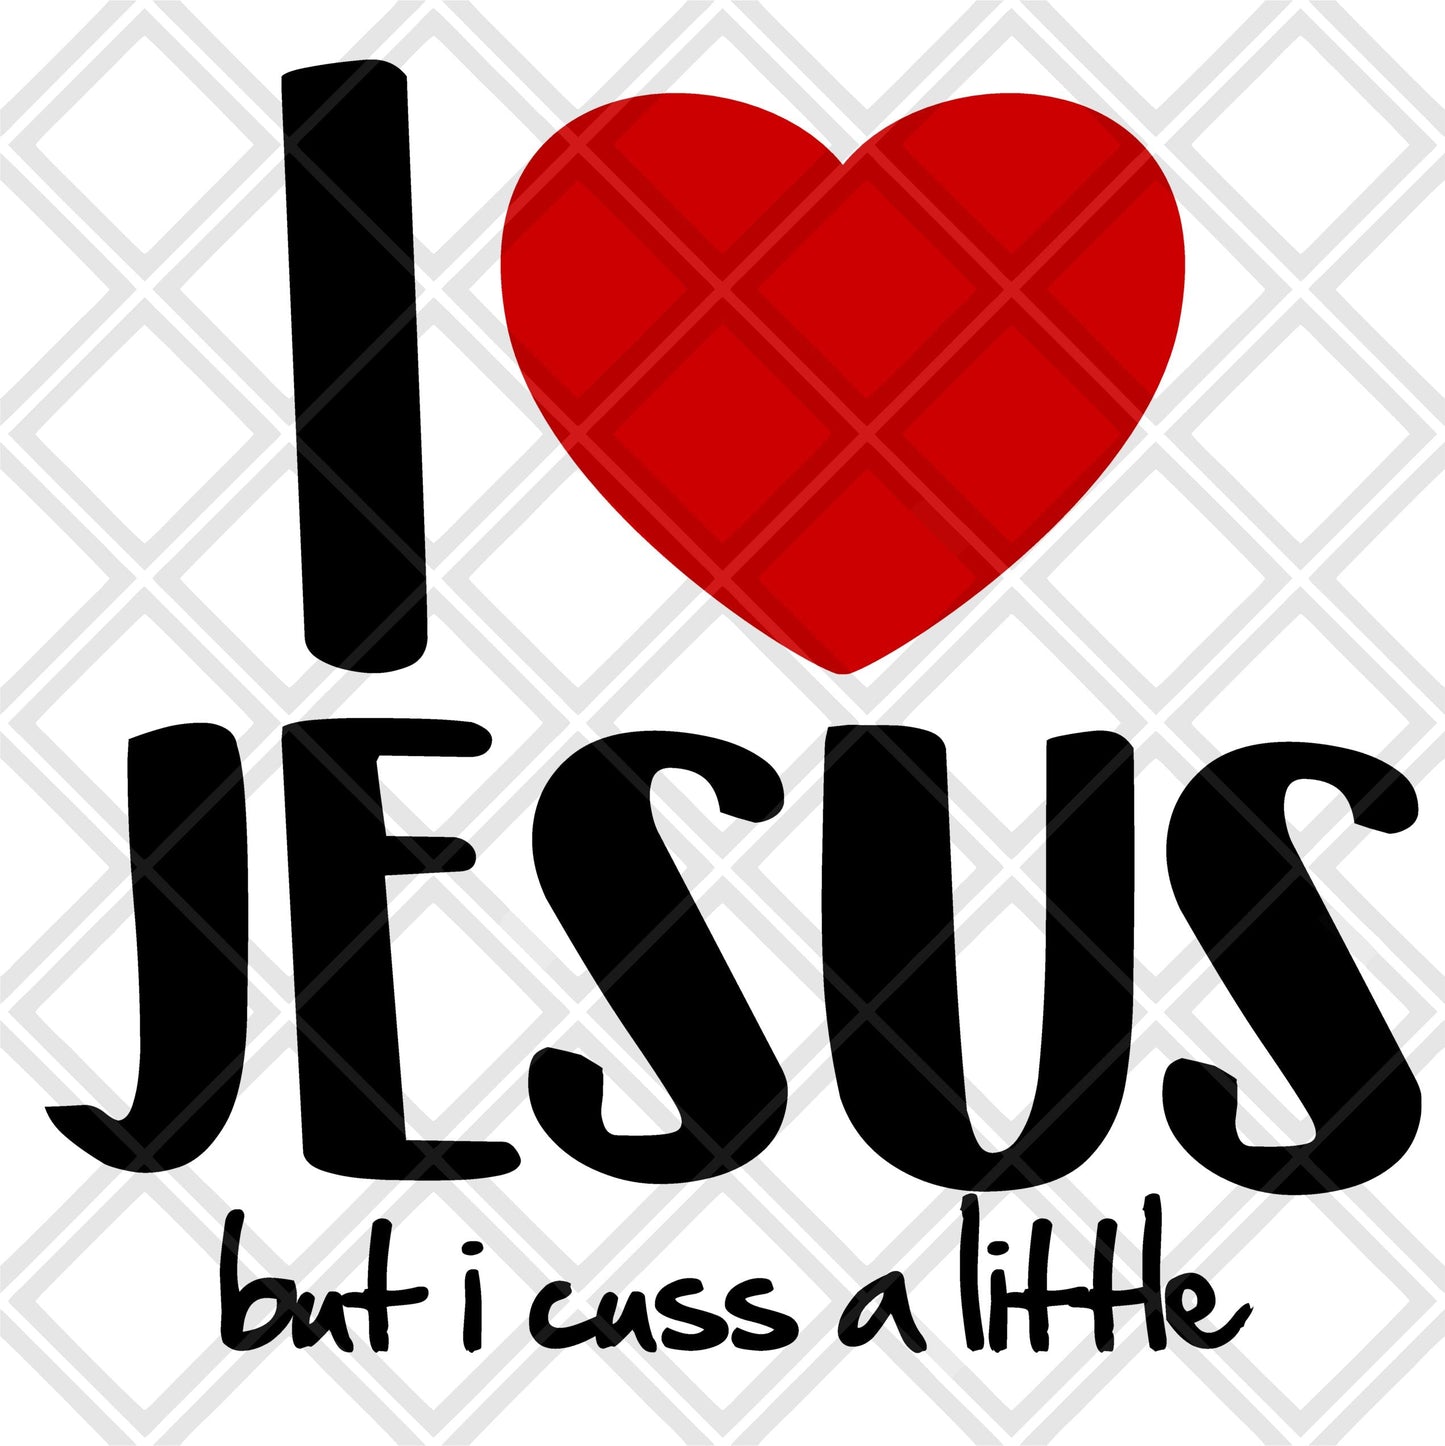 I LOVE JESUS BUT I CUSS A LITTLE NO FRAME Digital Download Instand Download